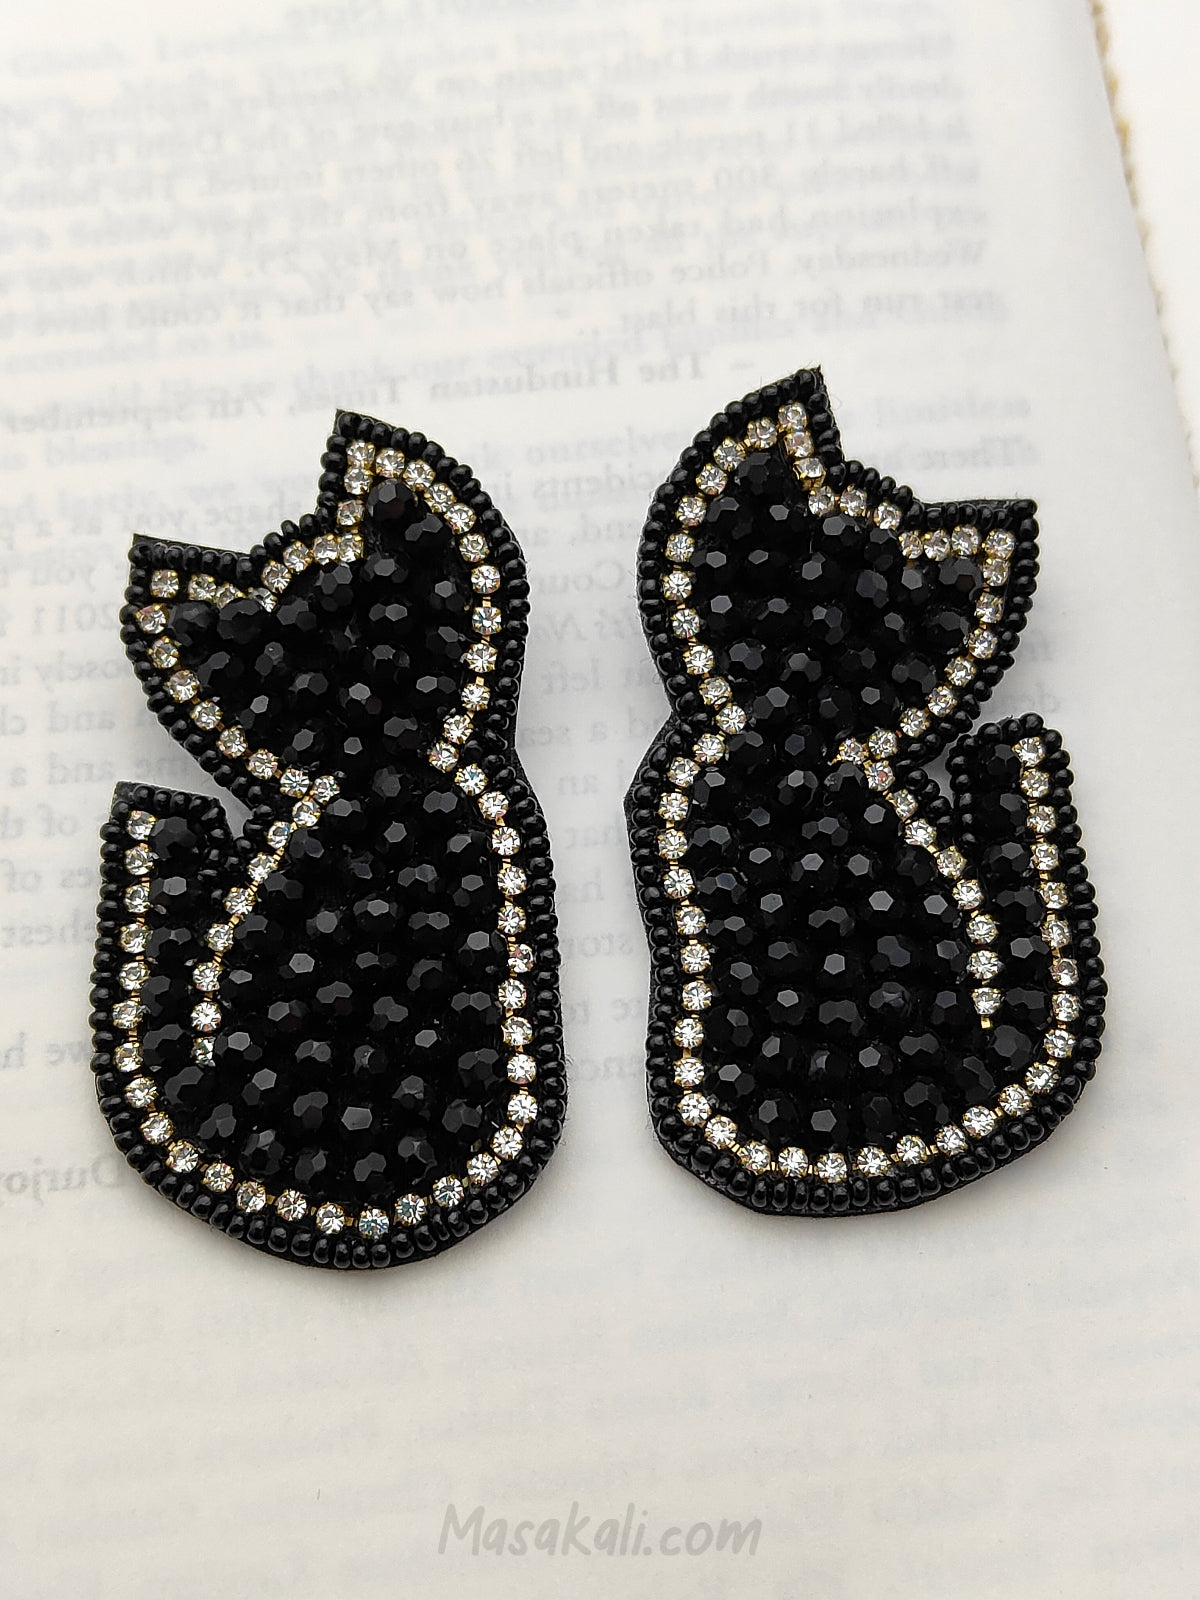 Black Cat Earrings, Quirky Kali Billi Beaded Stud Earrings (MSAF1002)